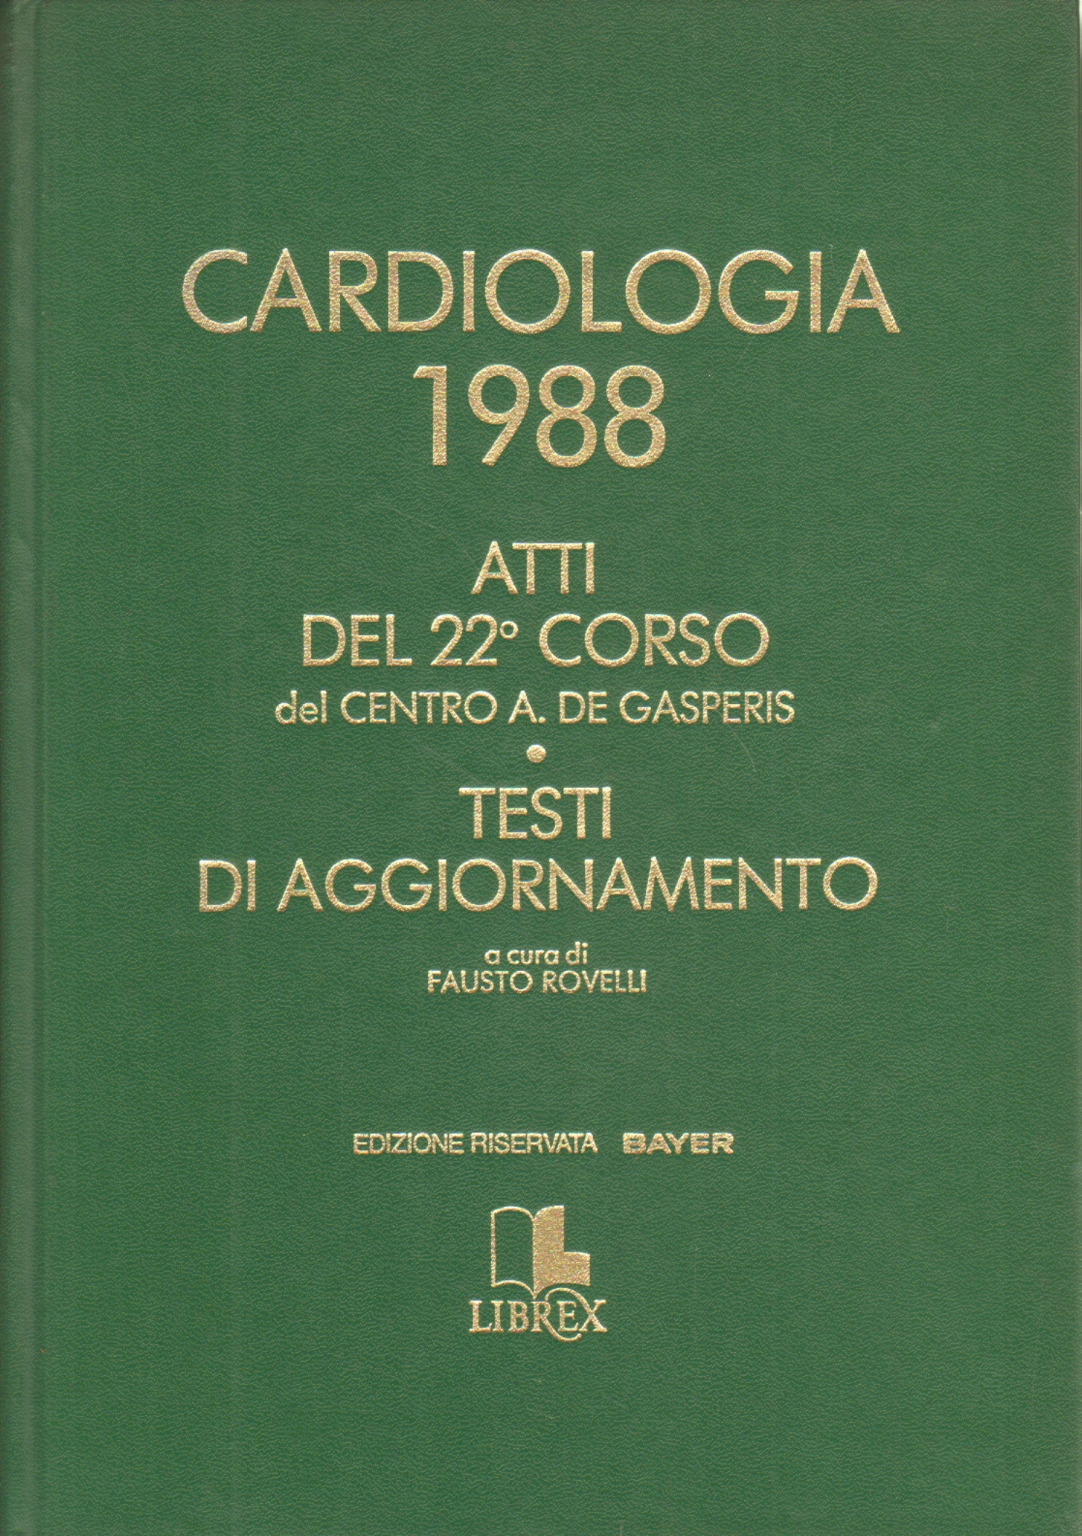 Cardiologia 1988, Fausto Rovelli